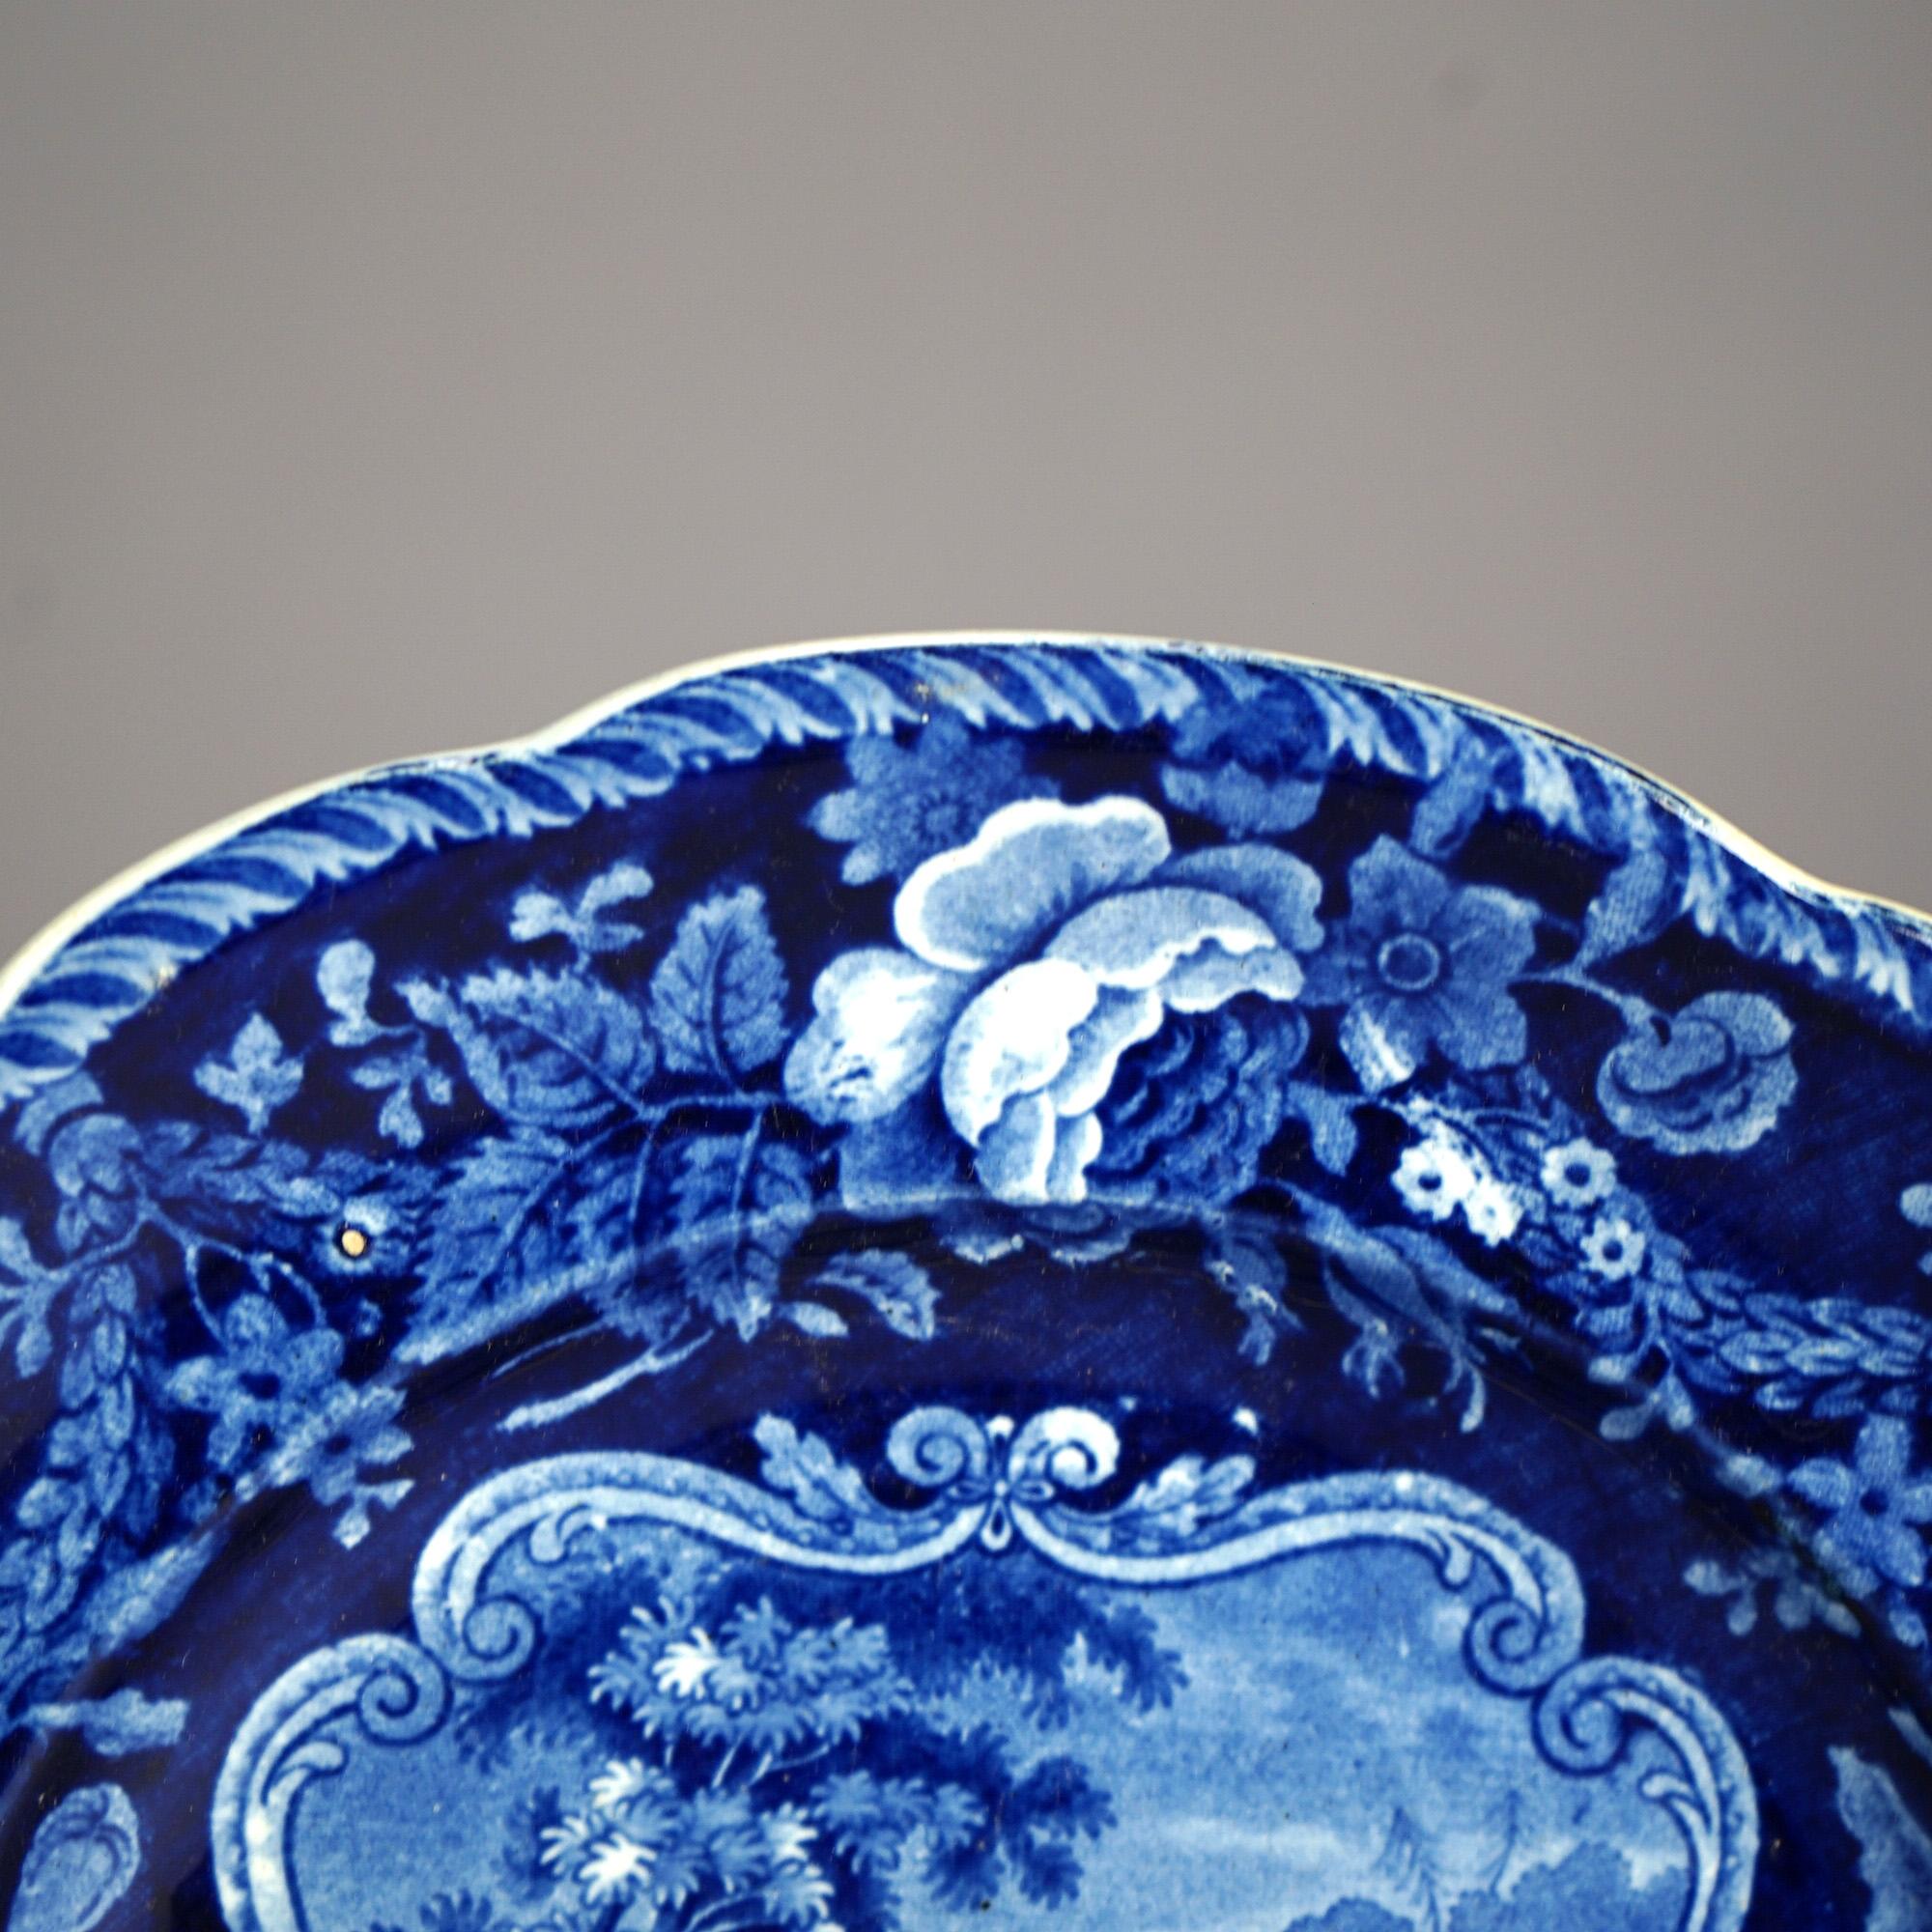 Five Antique Staffordshire Pottery Flow Blue Plates with Hunt Scènes 19th C 9